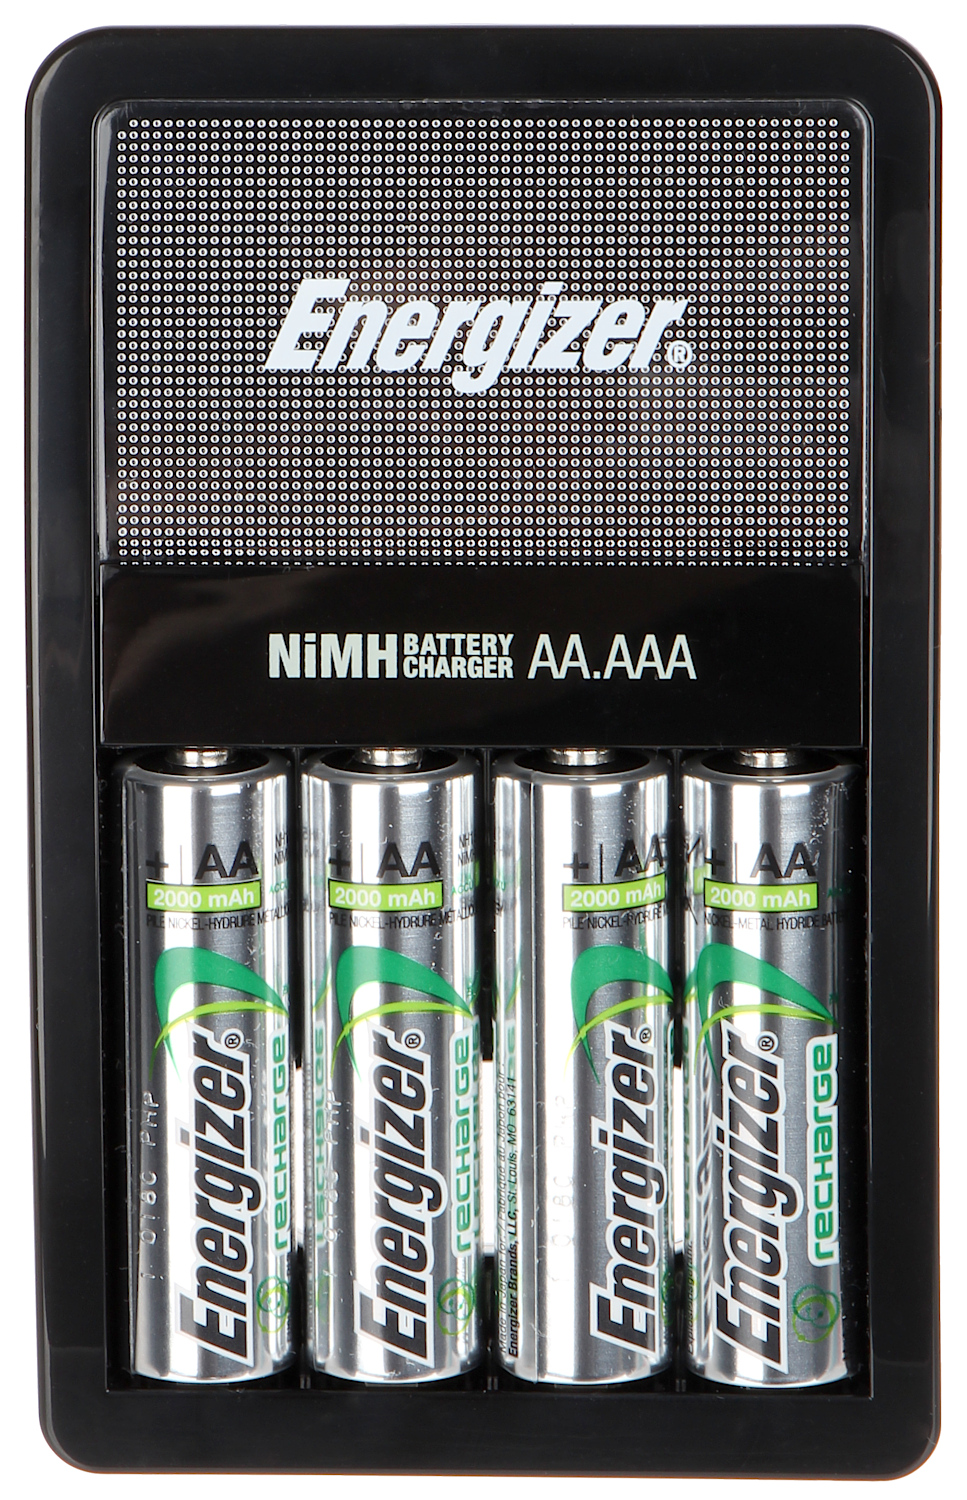 CARREGADOR BAT-RECHARGE/MAXI ENERGIZER - Carregadores de baterias - Delta